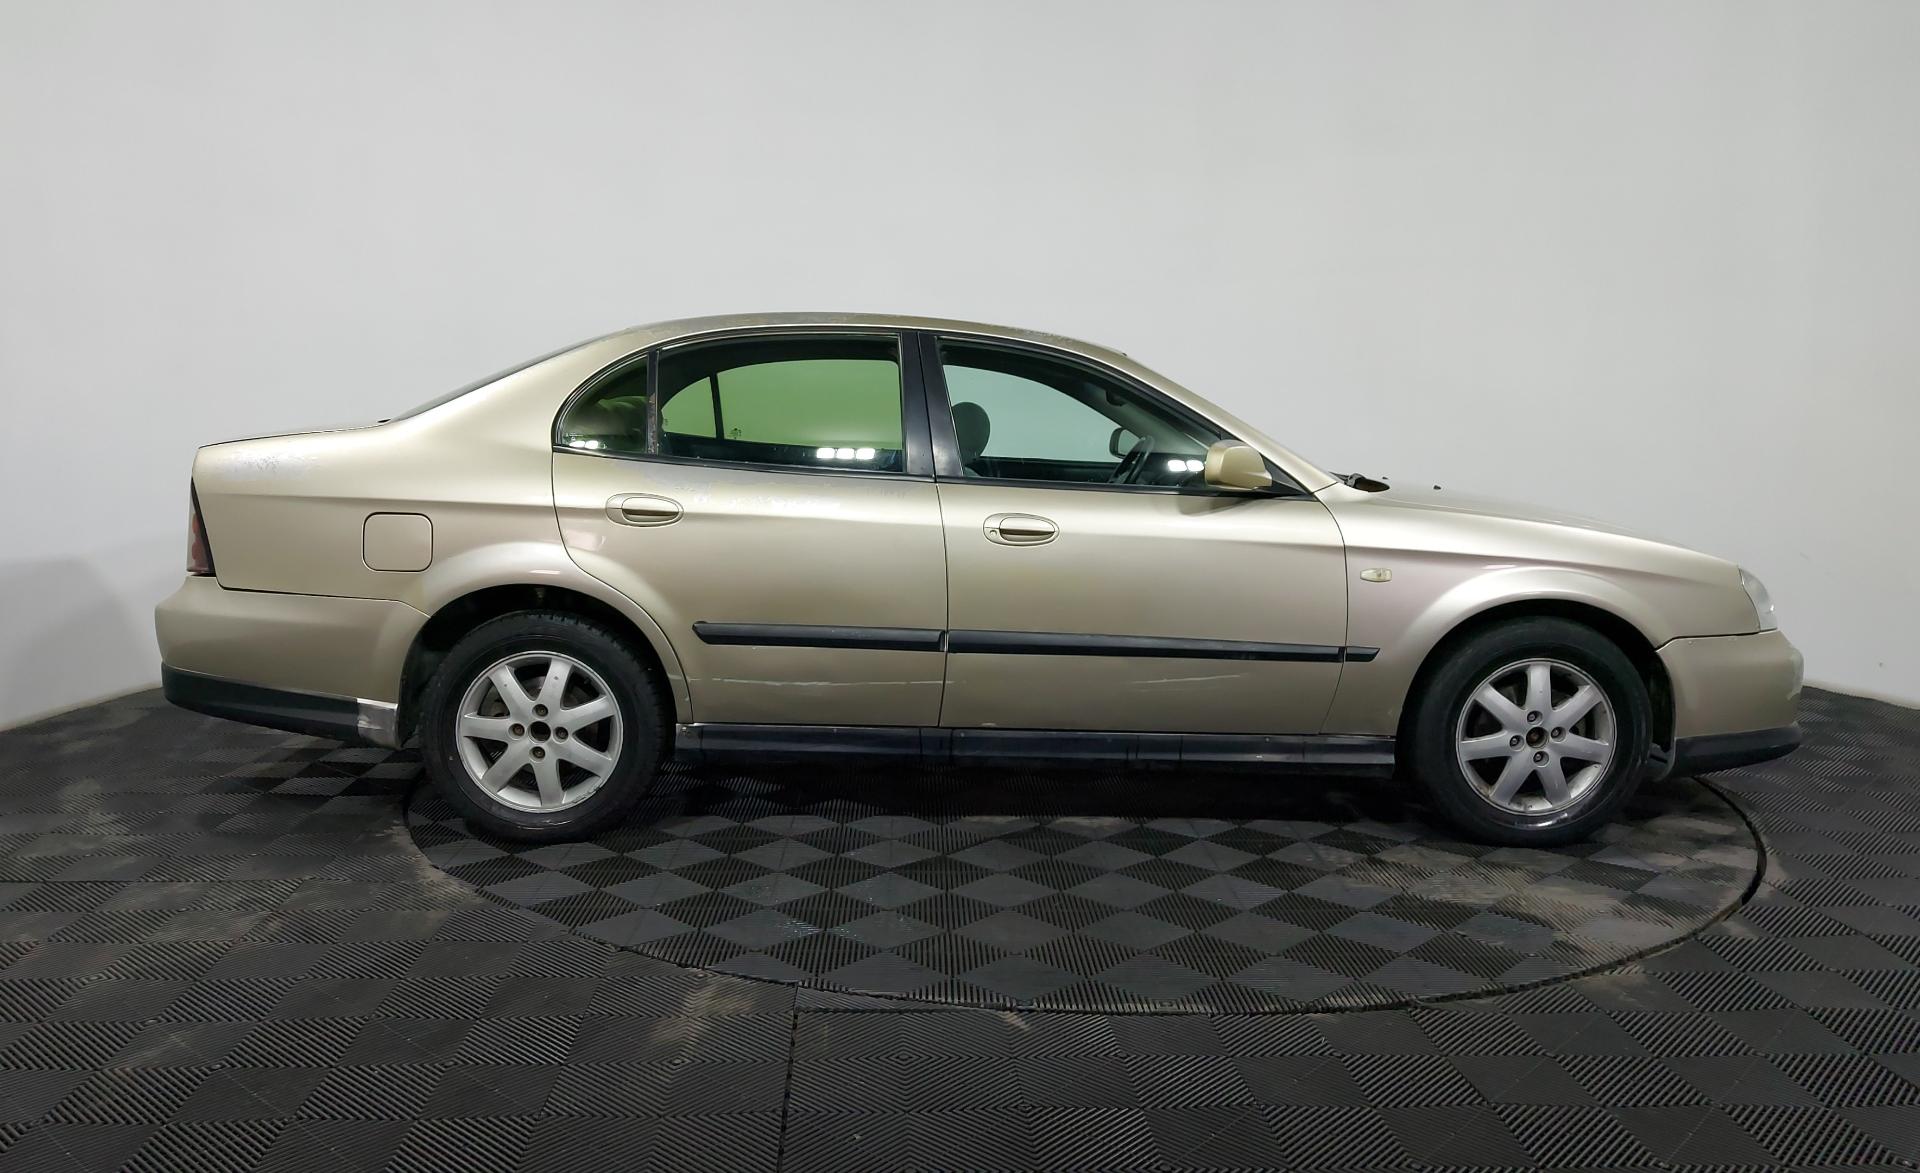 Купить Chevrolet Epica 2005 года в Алматы, цена 1 430